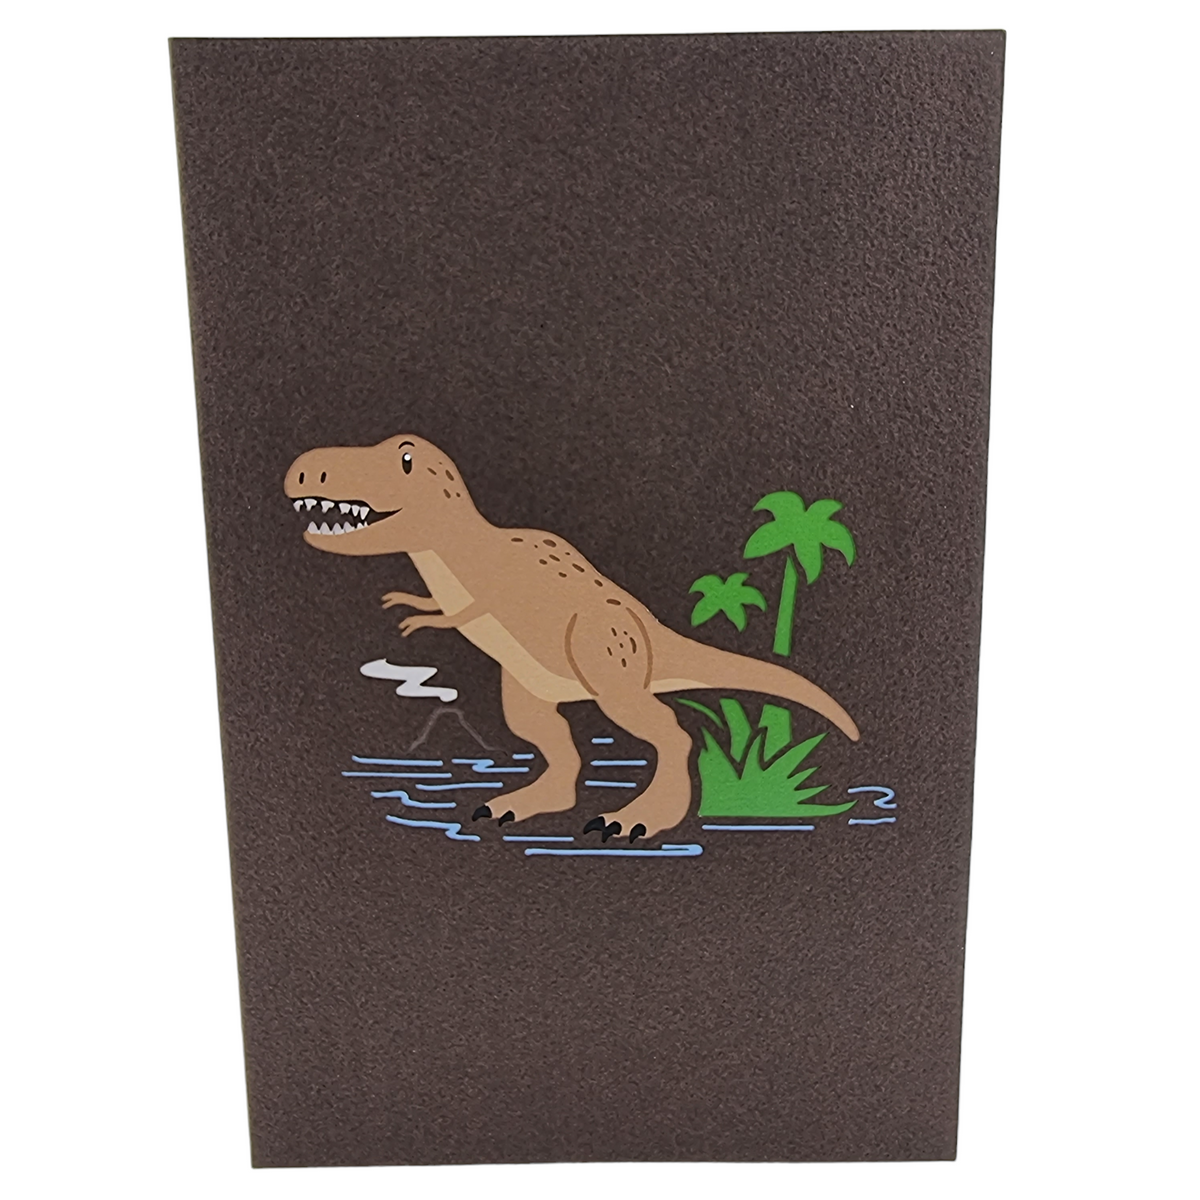 T-Rex Dinosaur Pop Up Card